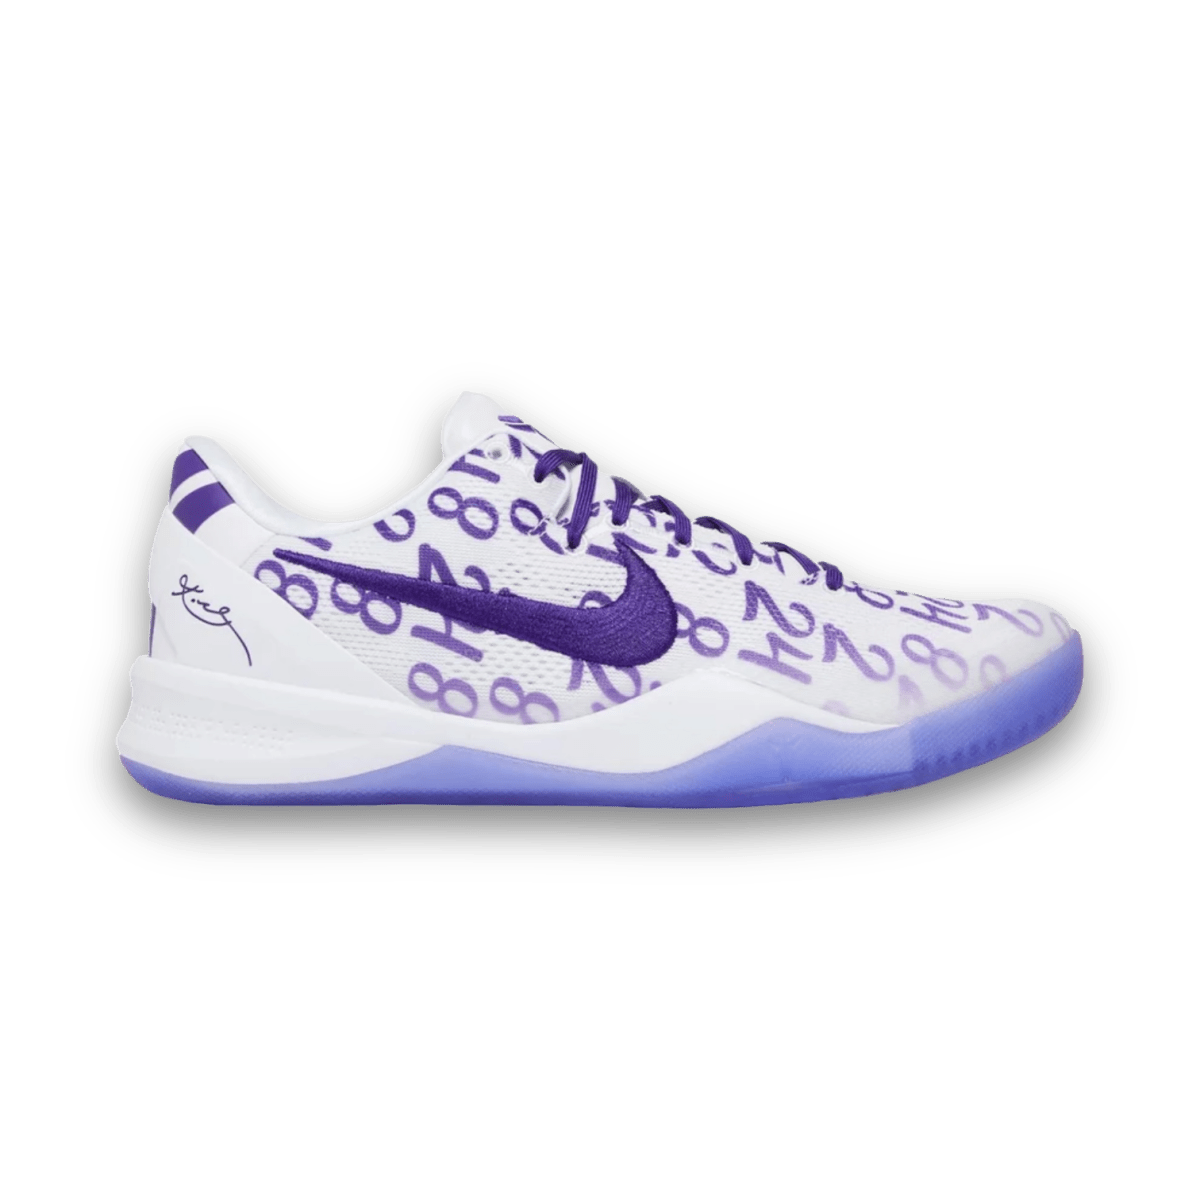 Kobe 8 Protro 'Court Purple' - Grade School - Low Sneaker - Jawns on Fire Sneakers & Streetwear